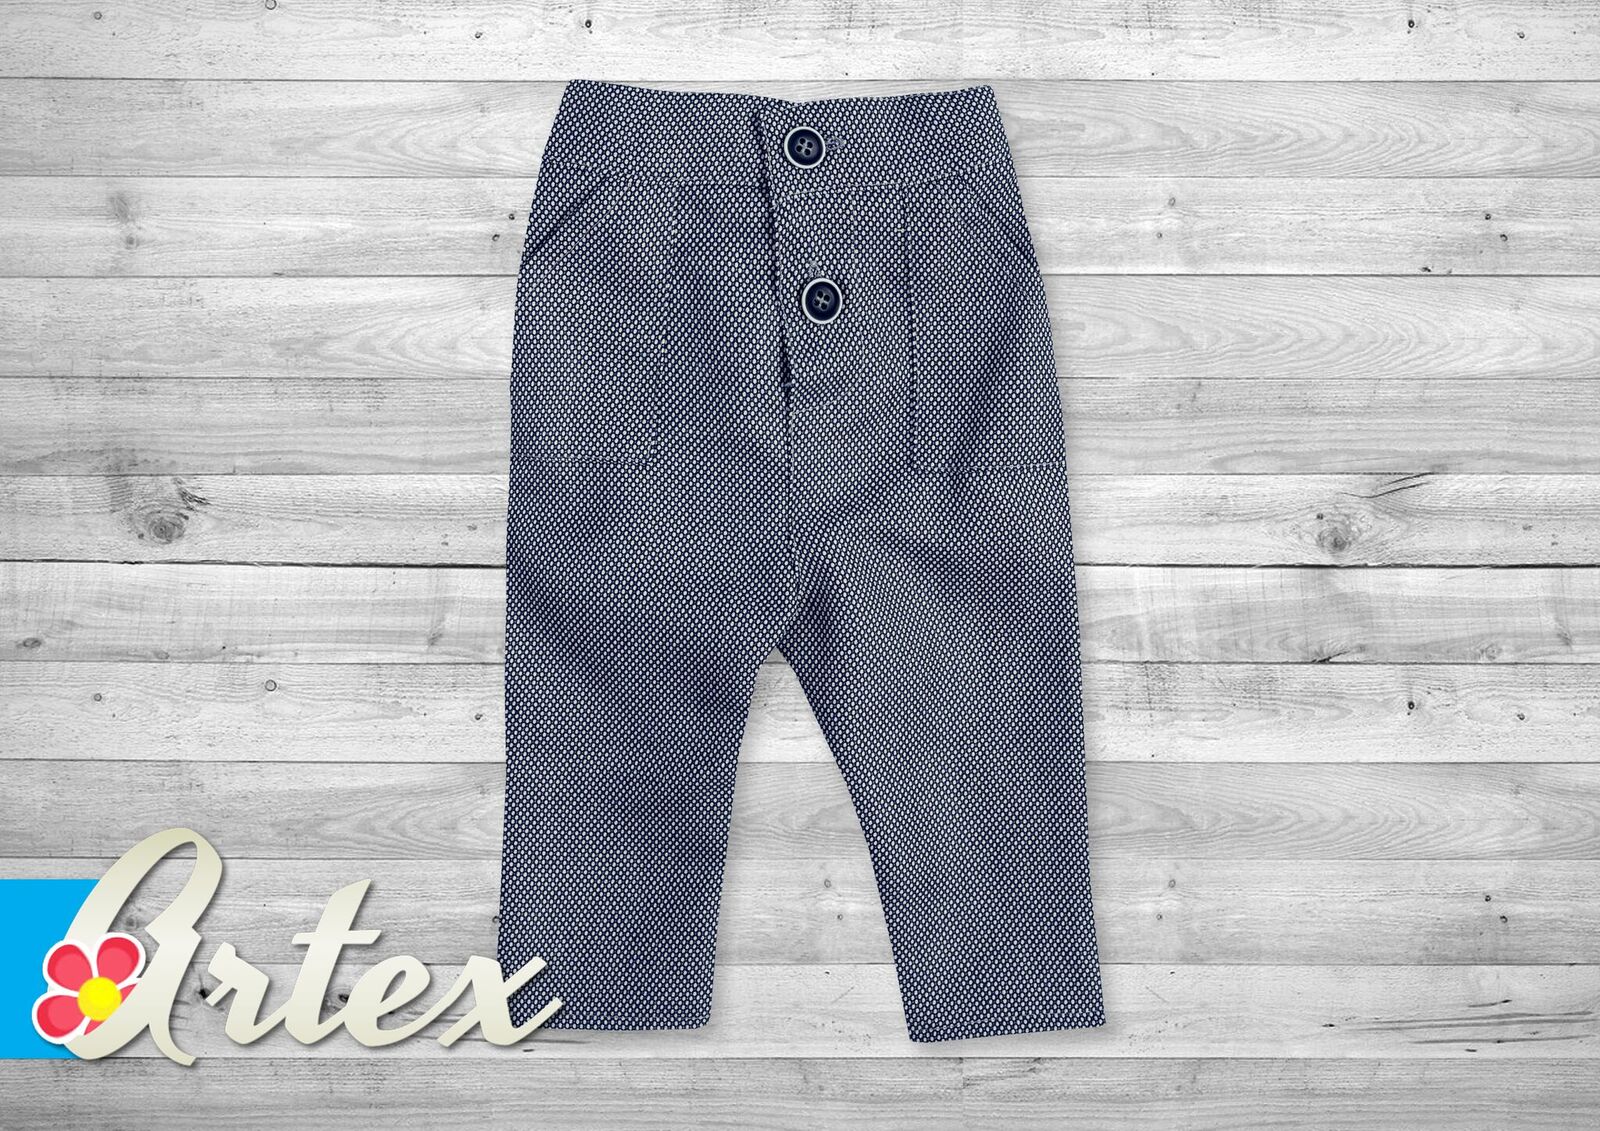 Chlapecké kalhoty společenské krátké šedočerné A44